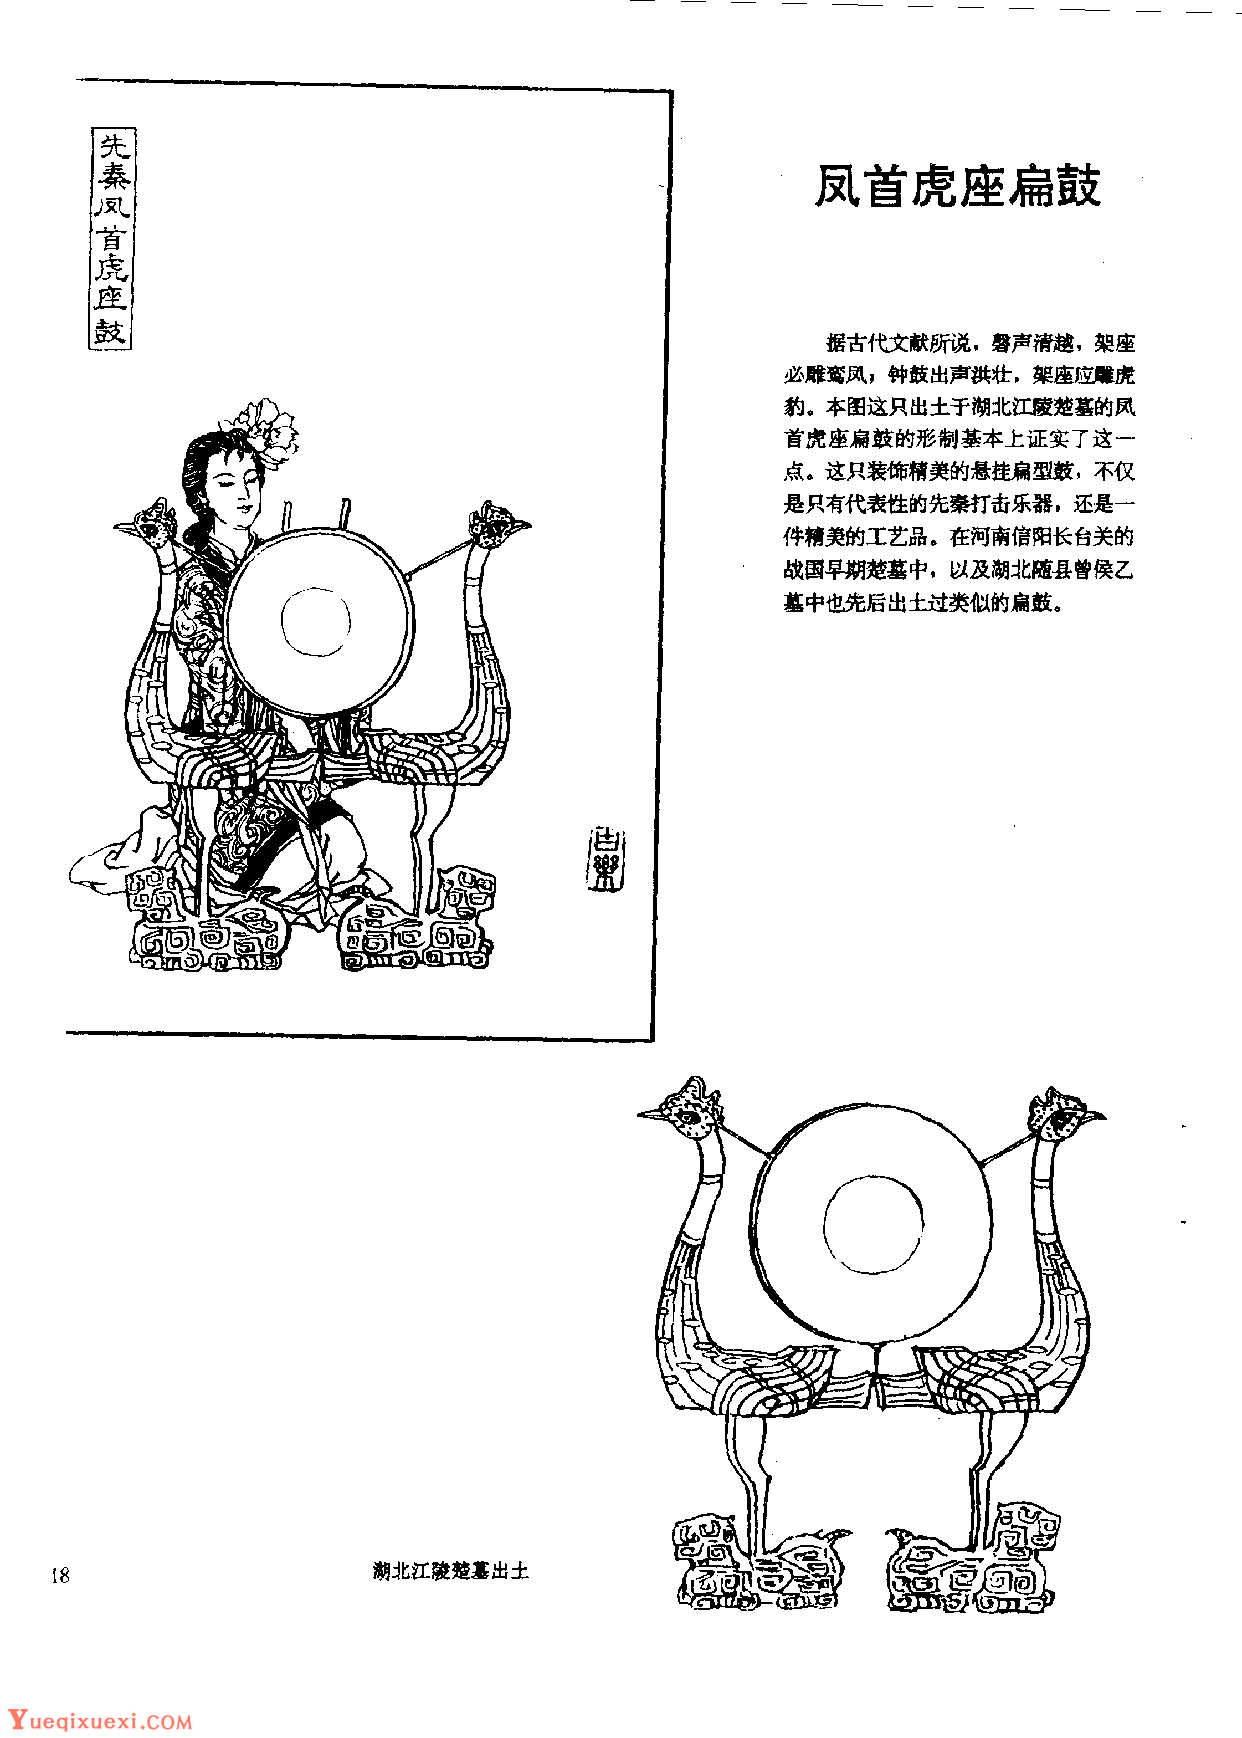 中国古代乐器《凤首虎座扁鼓》